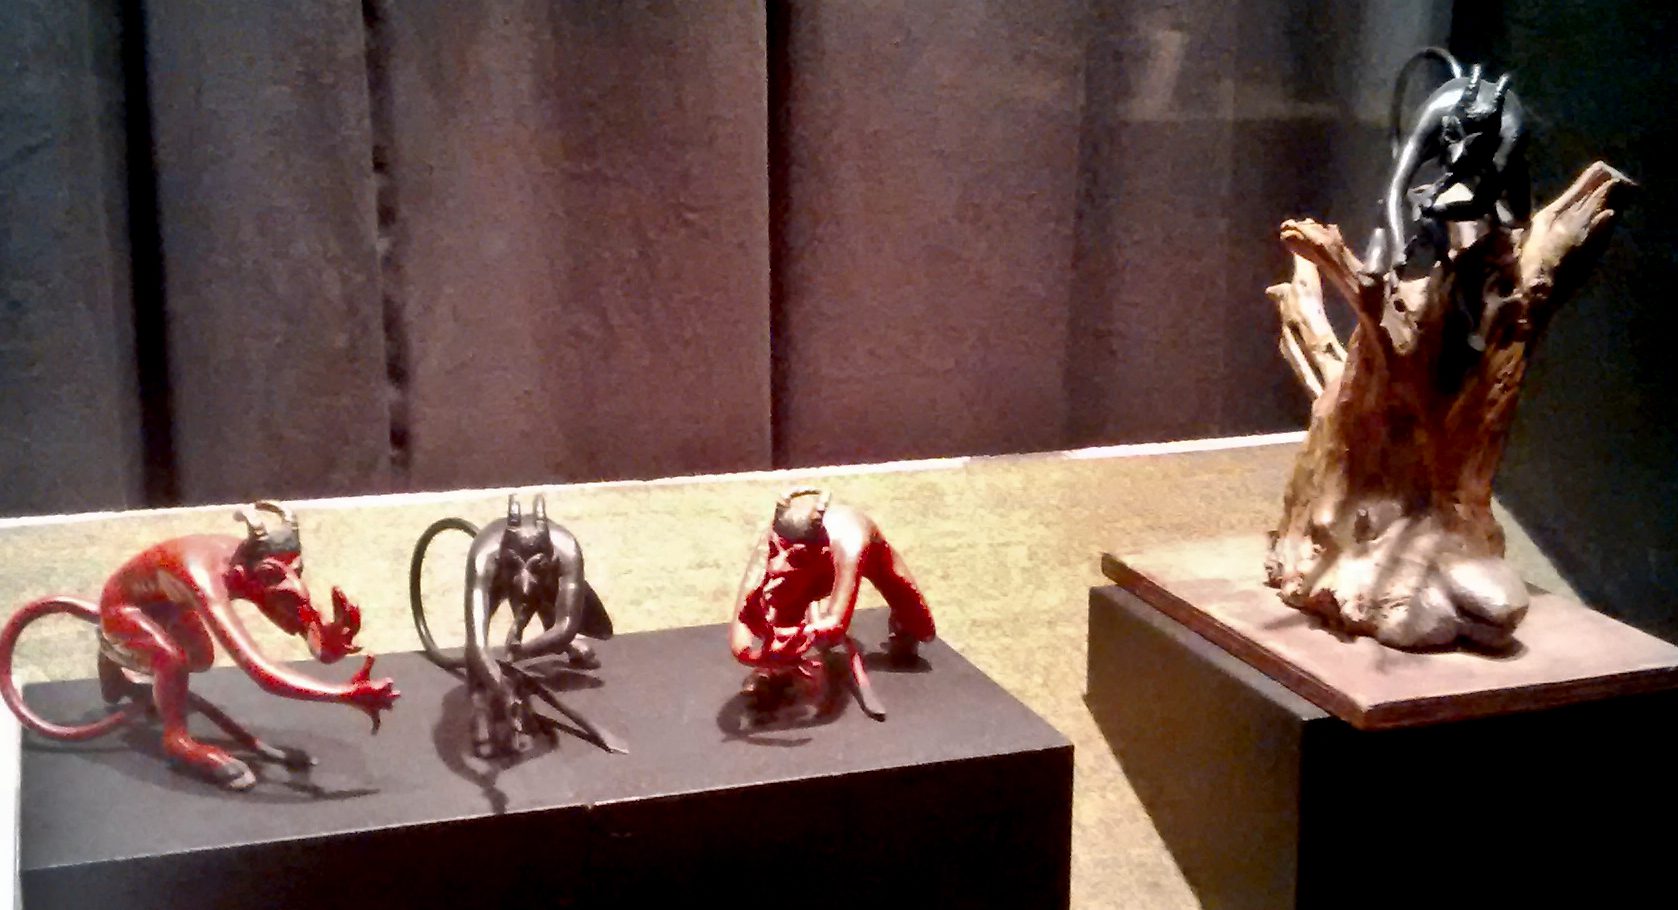 Group of devil sculptures